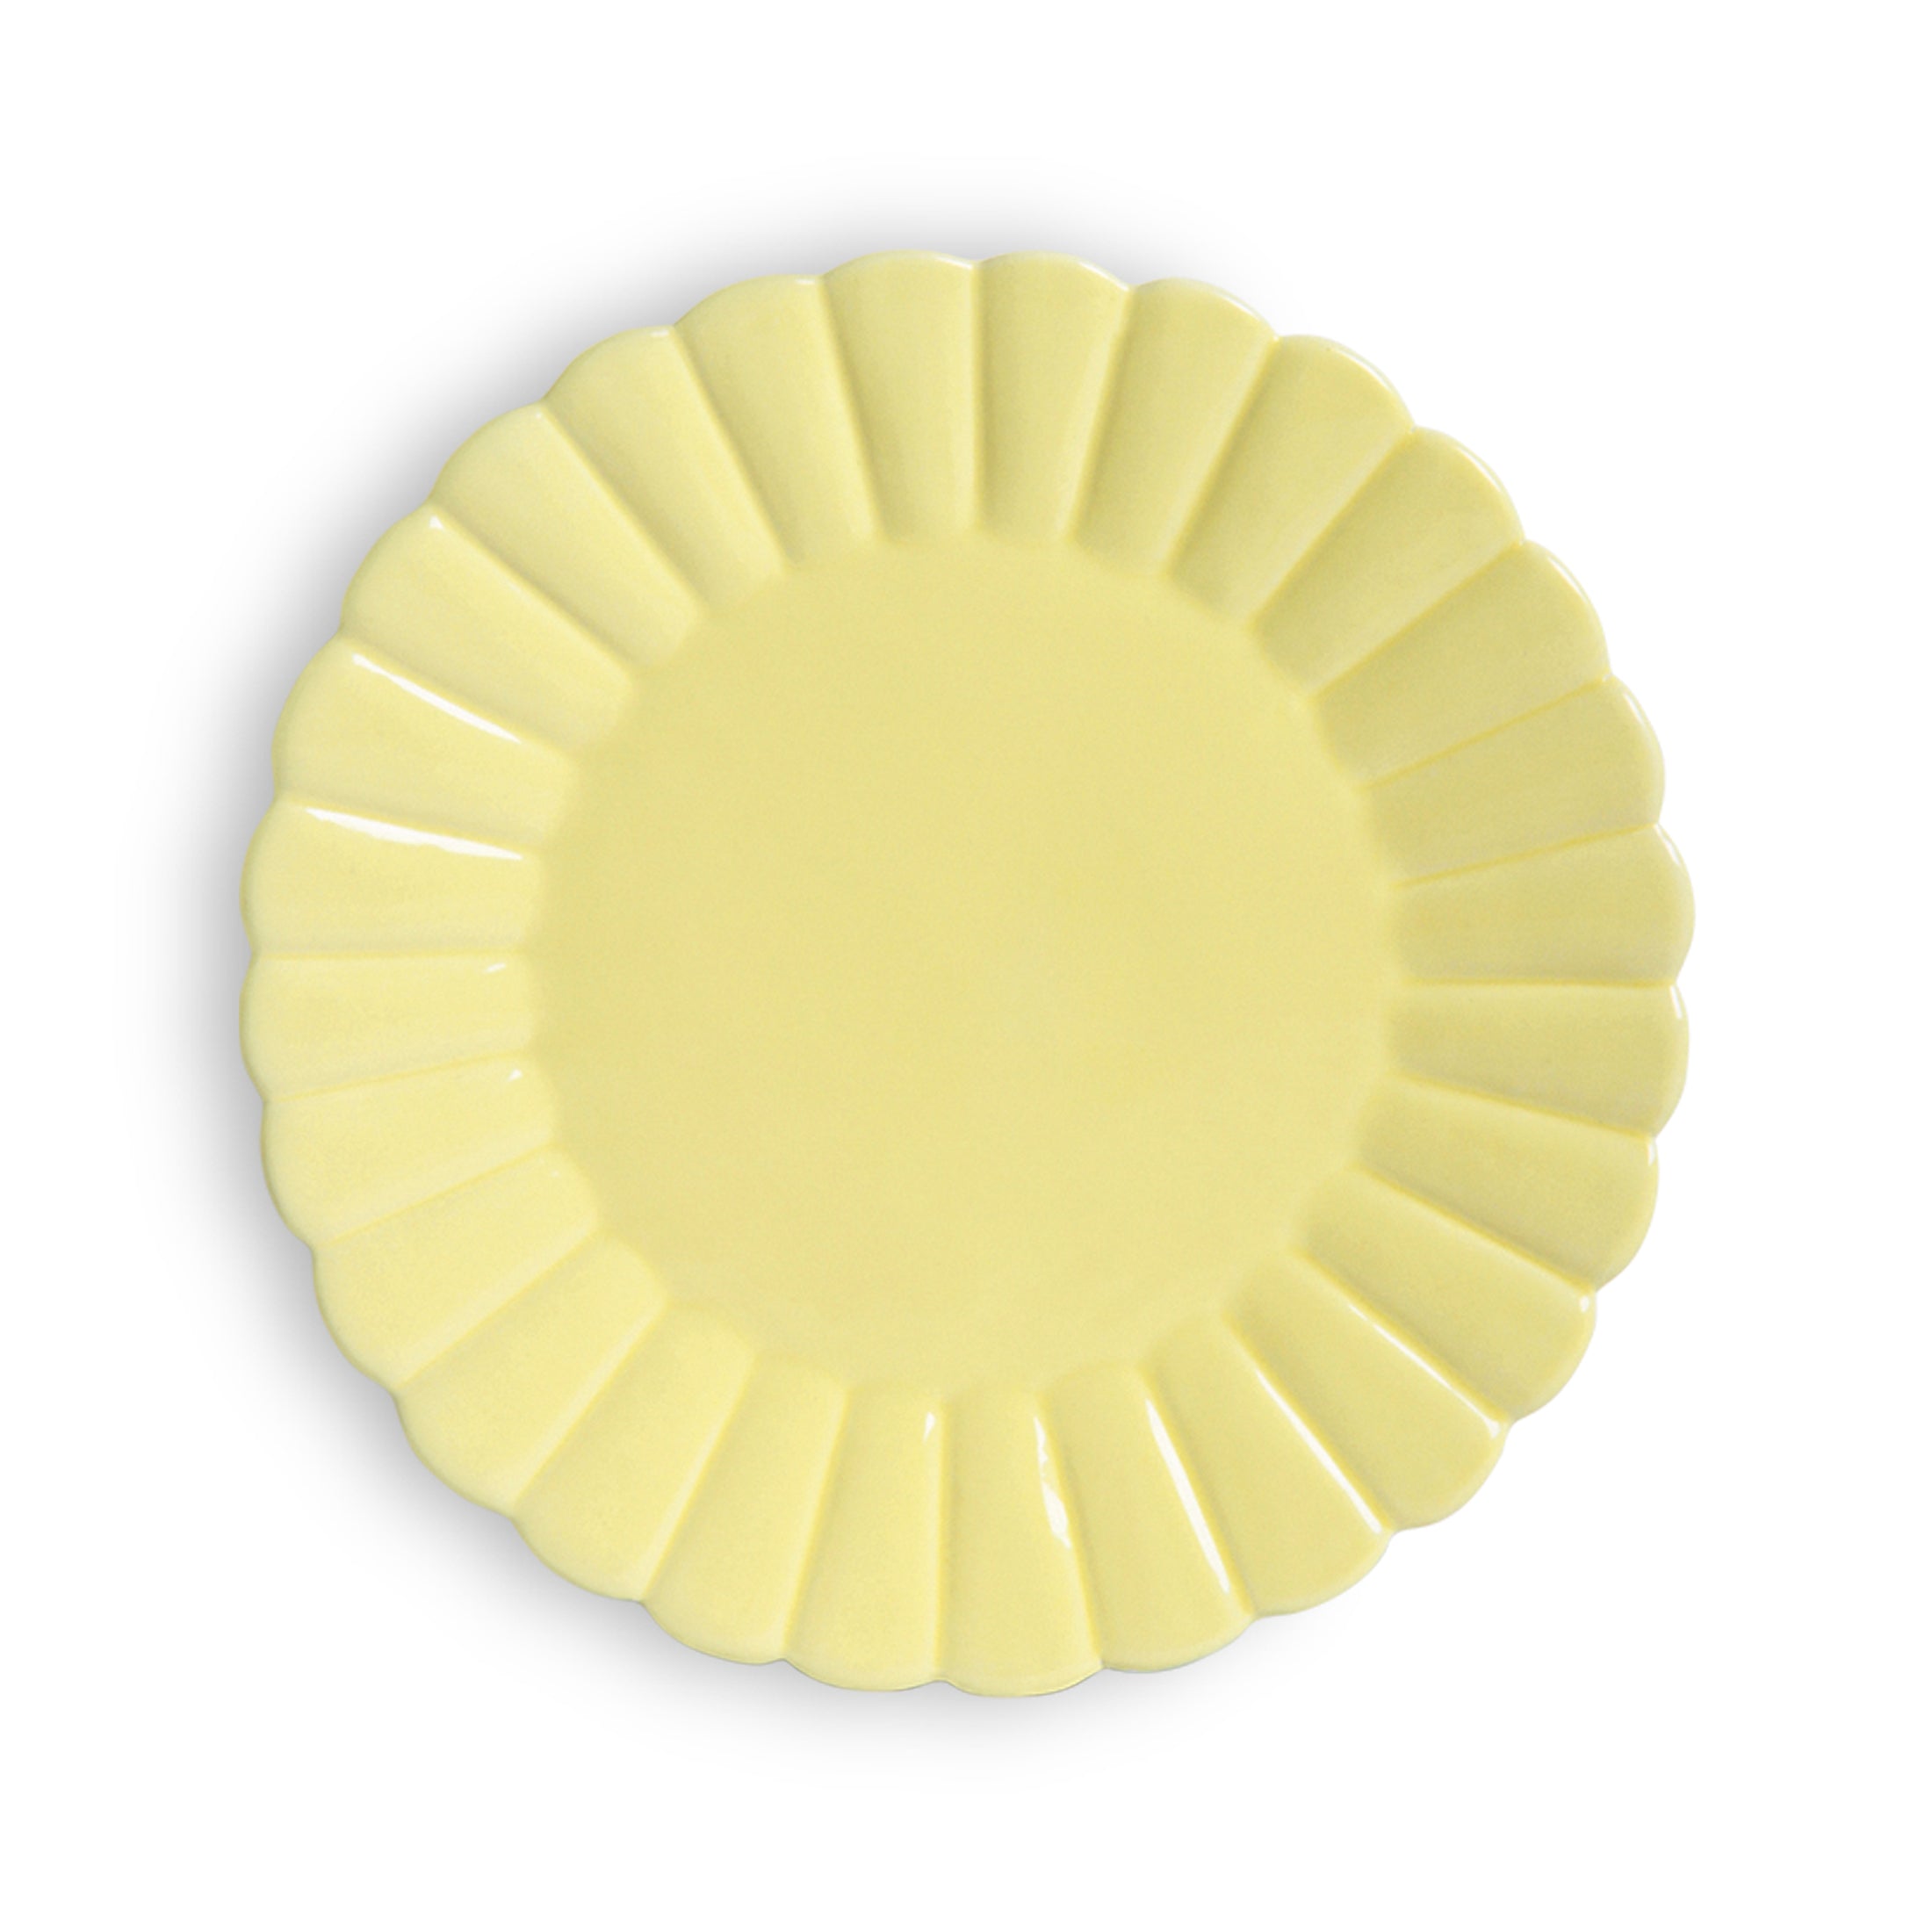 Herring & Bones - Concept Store Joyeux - &klevering - Assiettes - Assiette plate "Scallop"